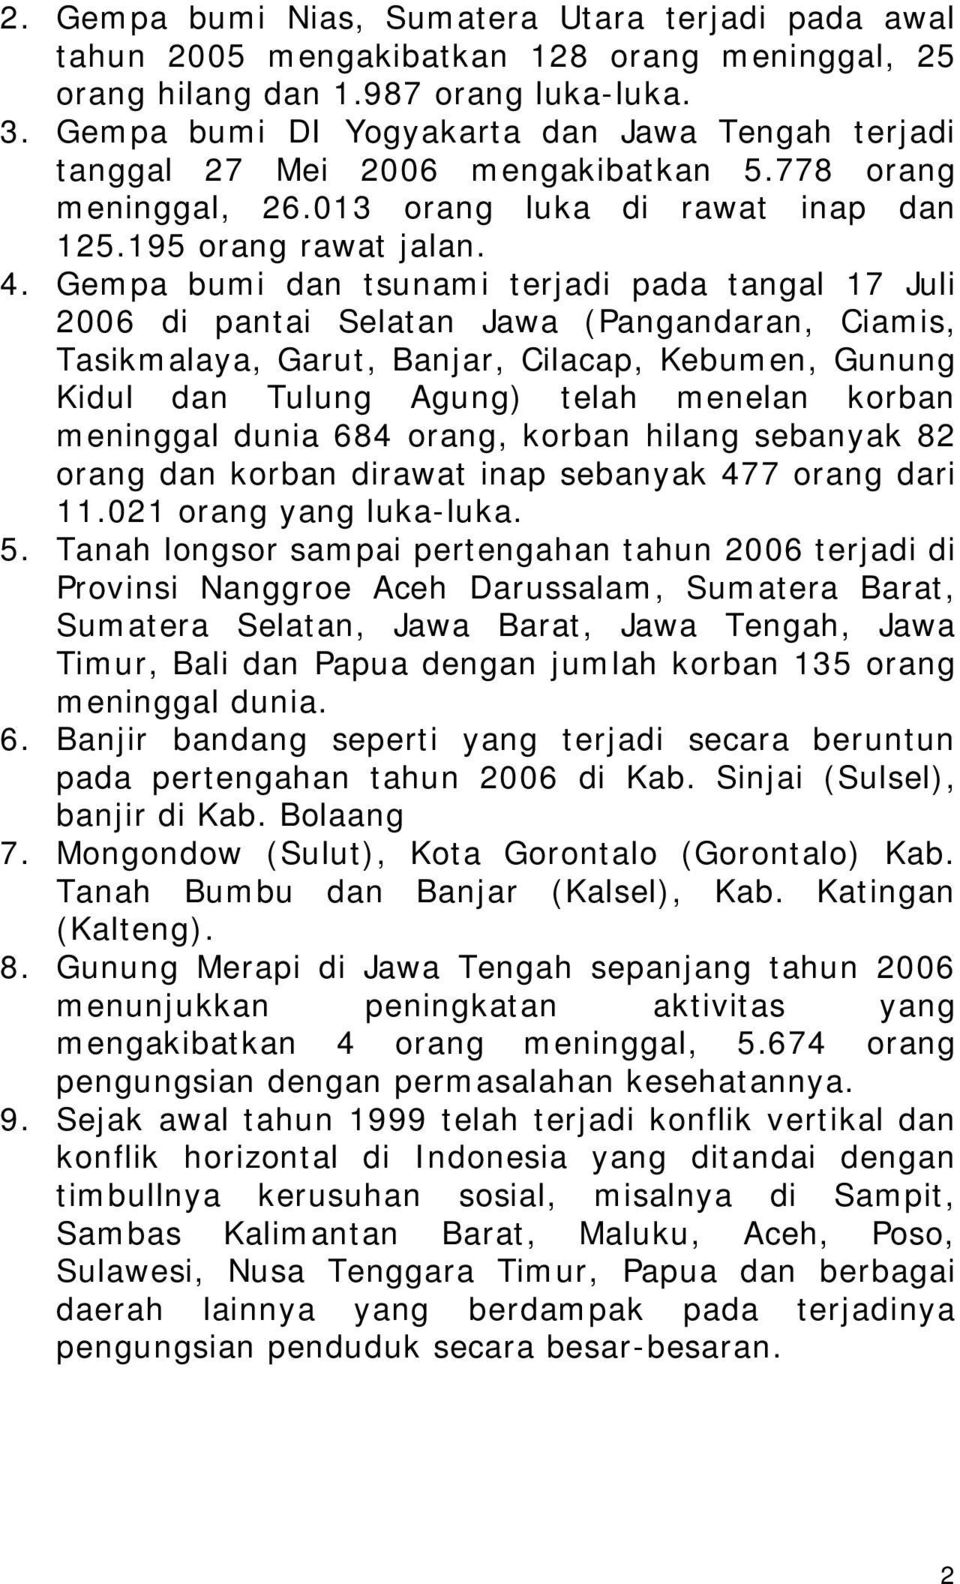 Gempa bumi dan tsunami terjadi pada tangal 17 Juli 2006 di pantai Selatan Jawa (Pangandaran, Ciamis, Tasikmalaya, Garut, Banjar, Cilacap, Kebumen, Gunung Kidul dan Tulung Agung) telah menelan korban